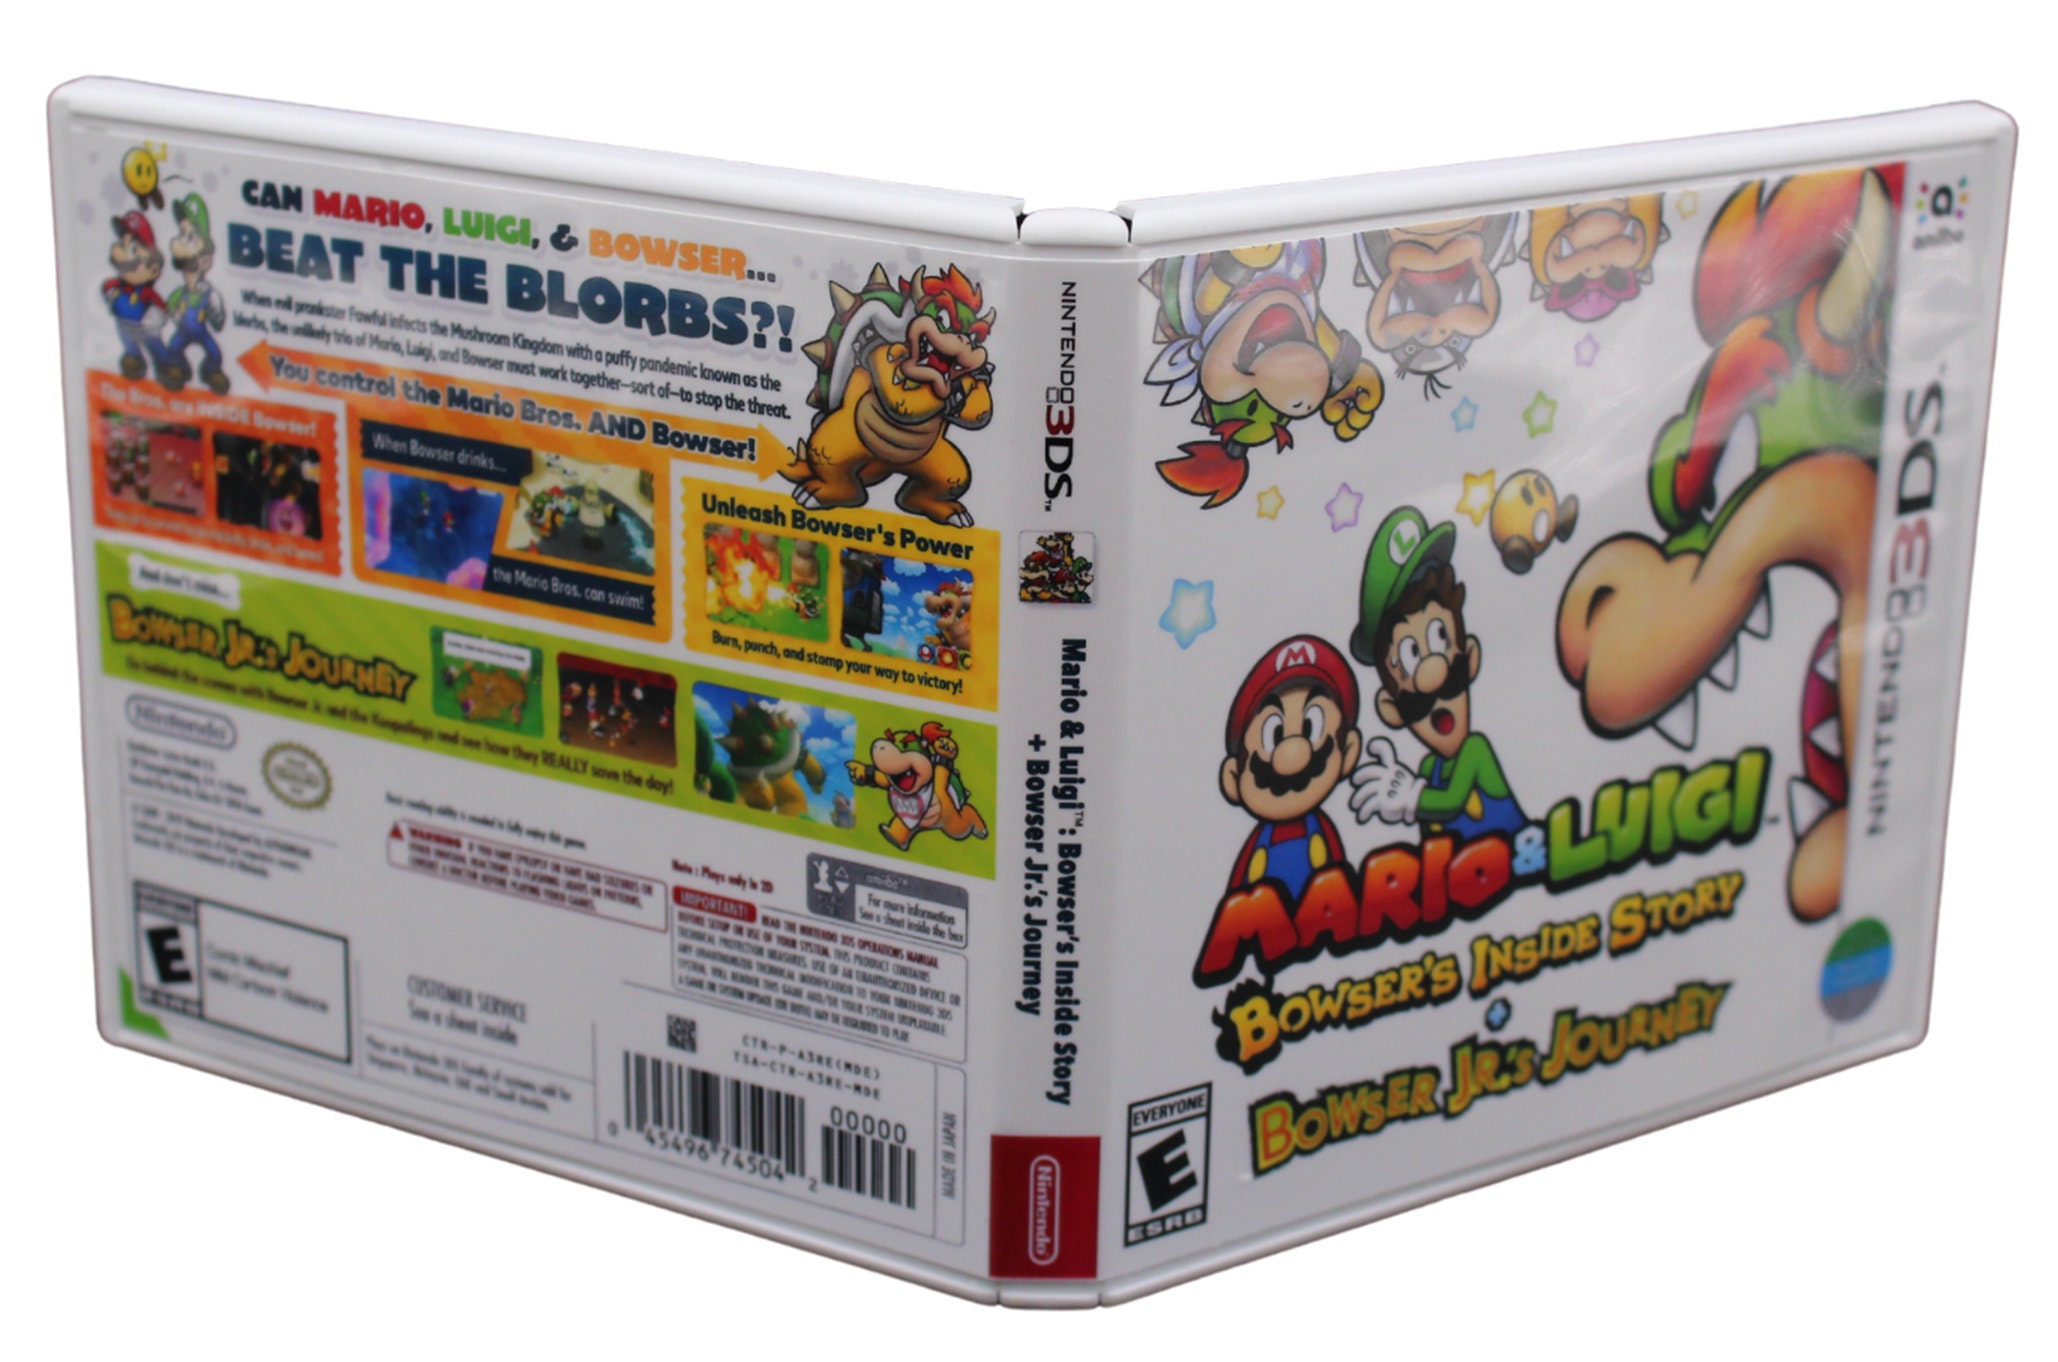 Mario & Luigi: Bowser's Inside Story + Bowser Jr.'s Journey (EUR) : r/Roms